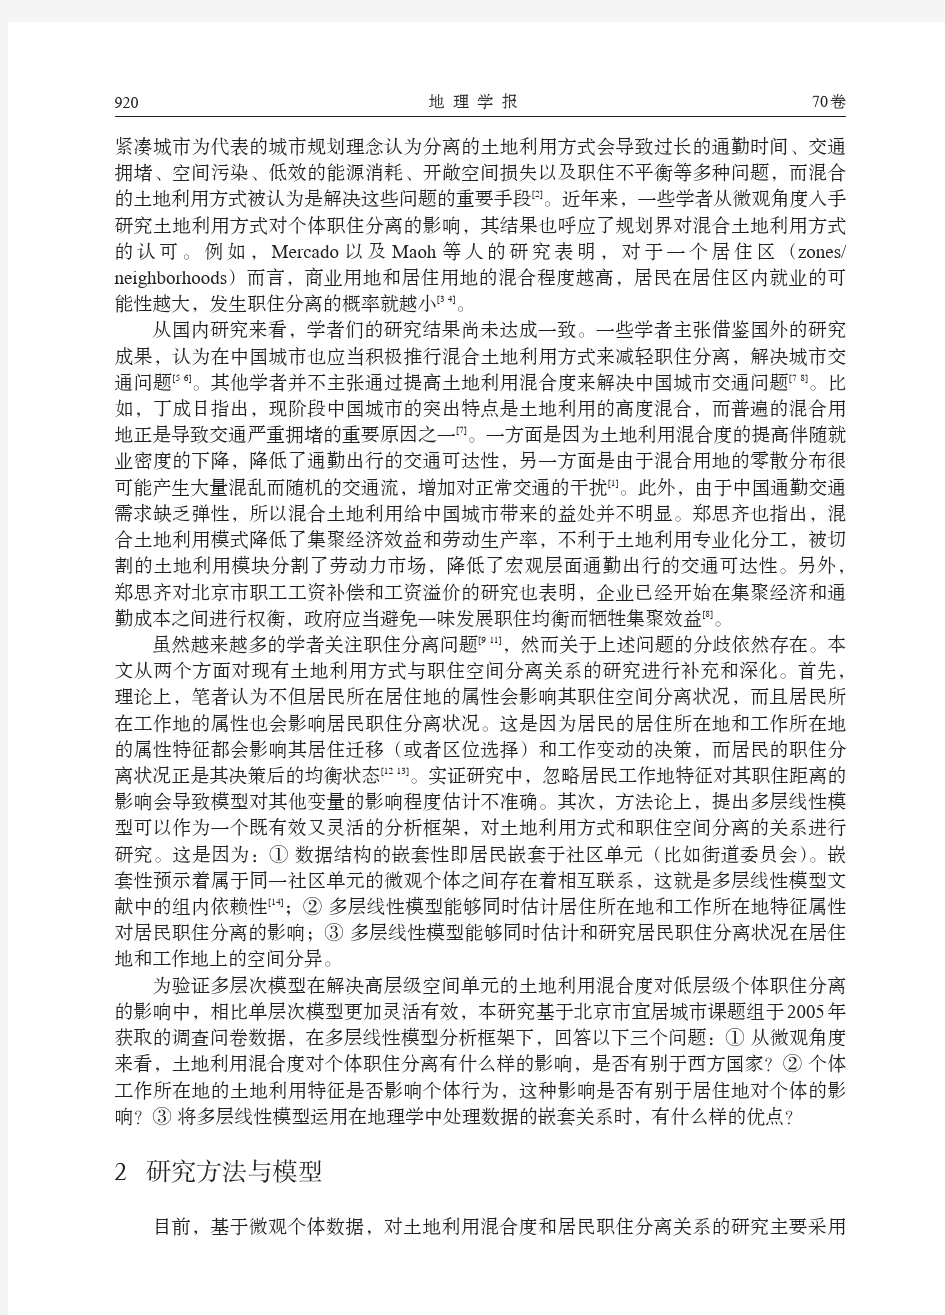 北京土地利用混合度对居民职住分离的影响